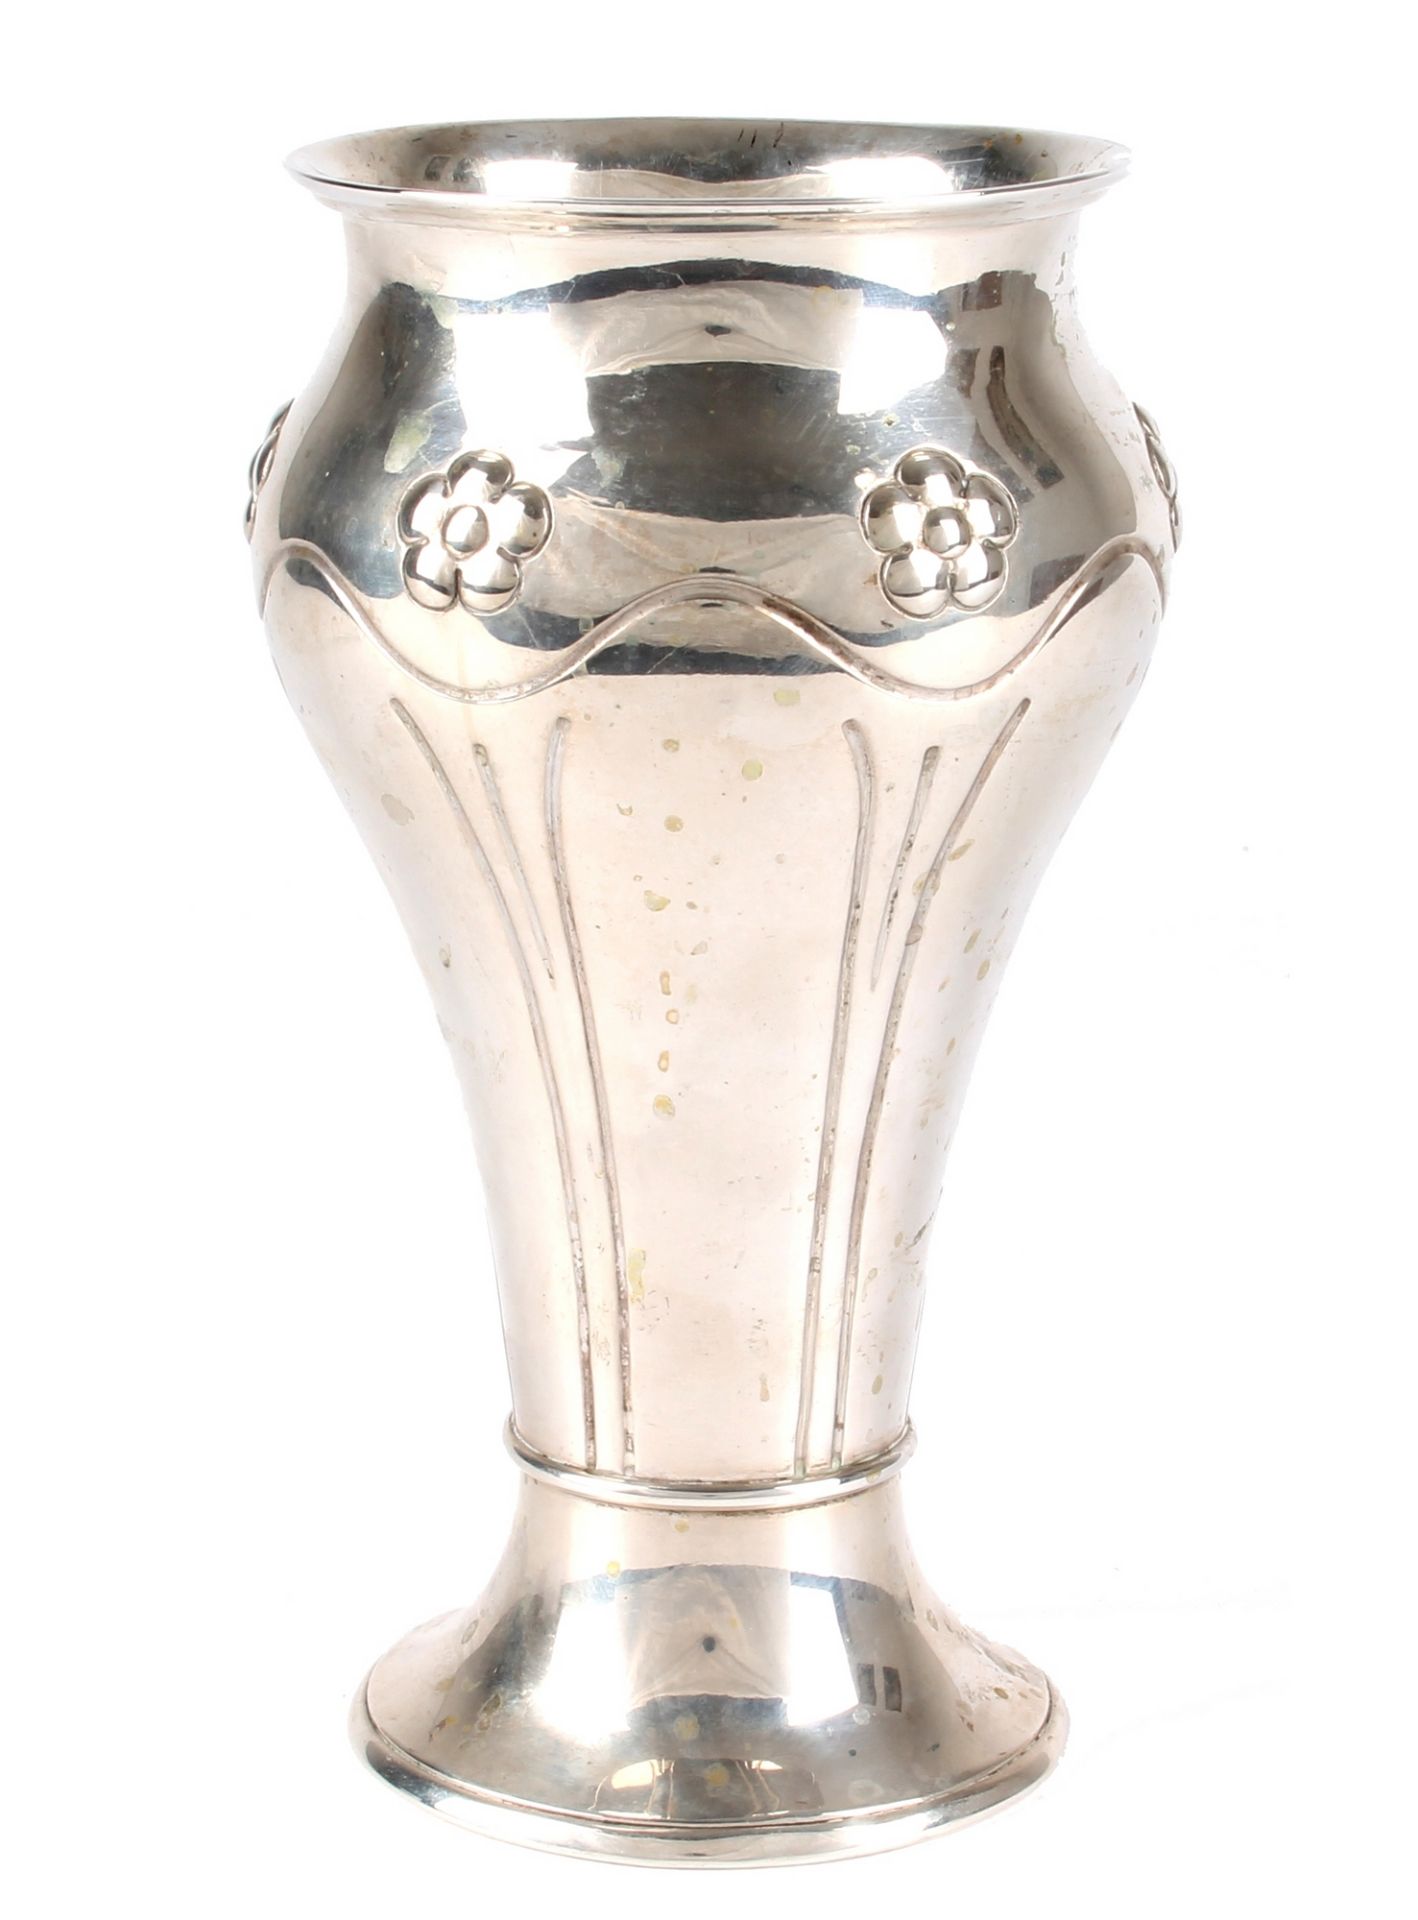 Jugendstil Silber Vase, denmark silver vase art nouveau,